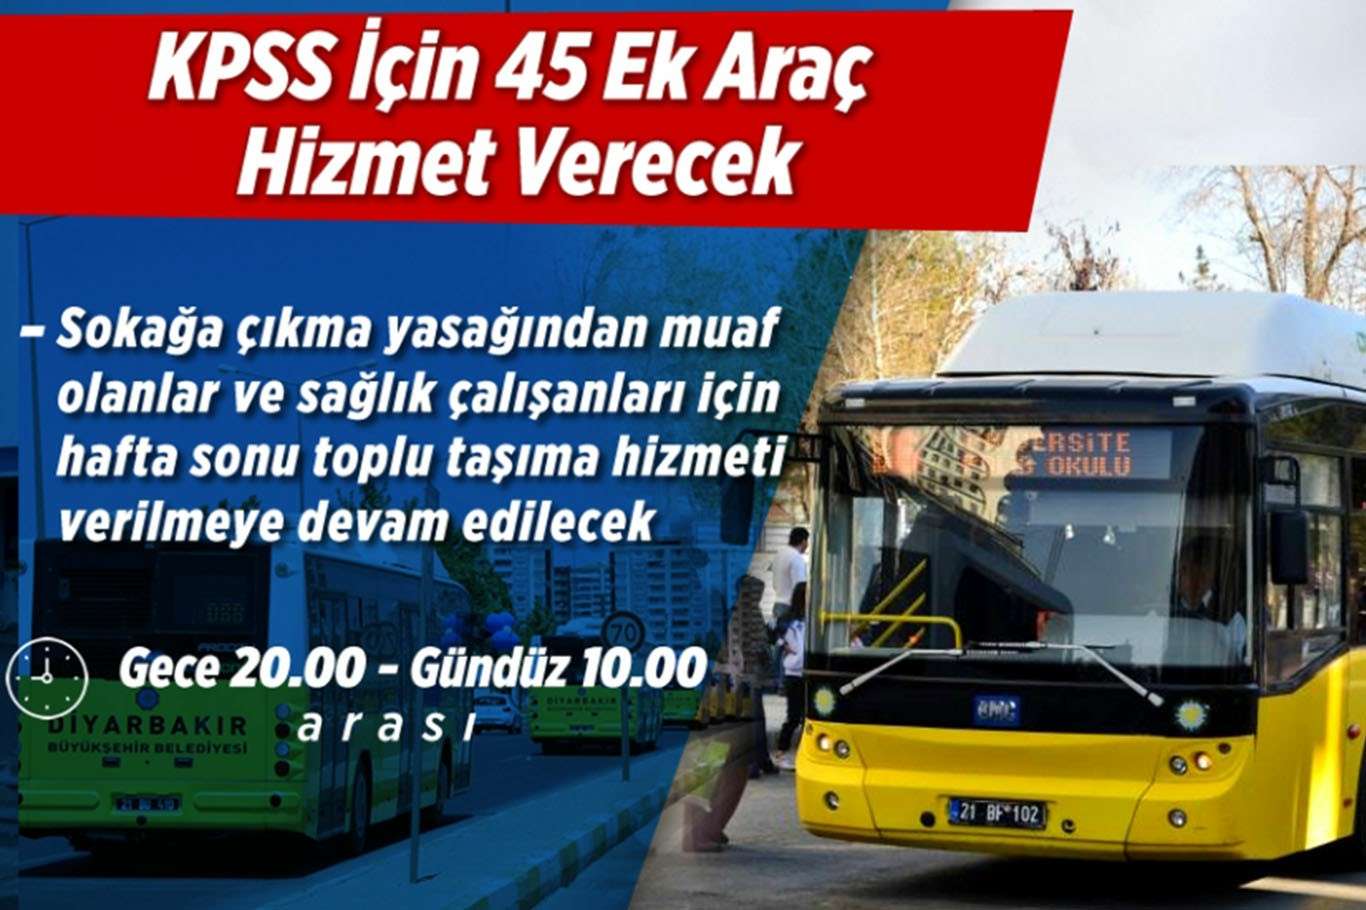 KPSS için 45 ek araç hizmet verecek